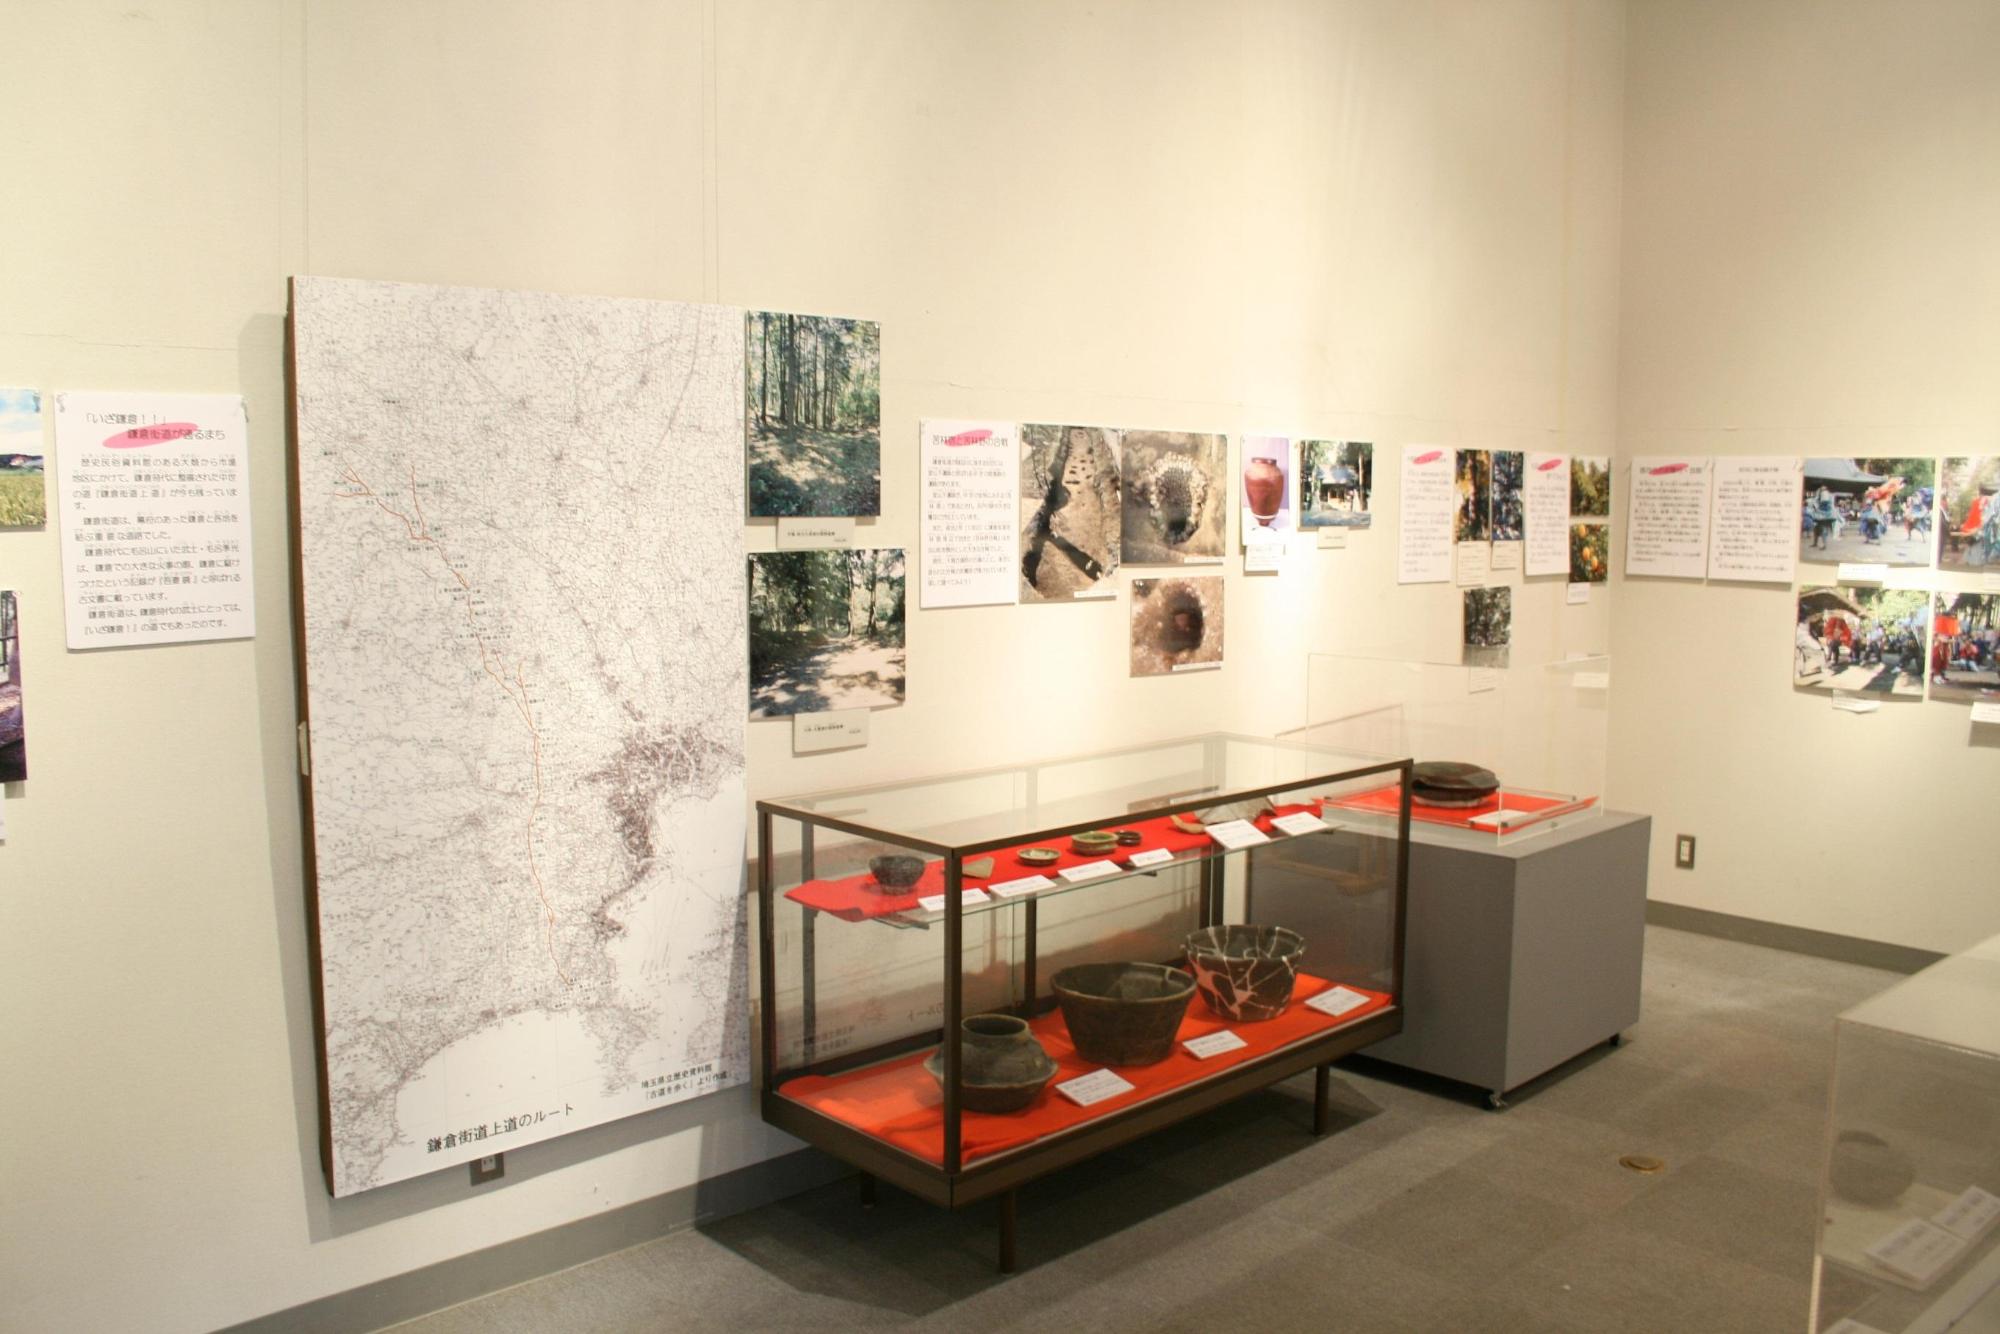 壁に大きな街道地図や写真、手前のショーケースに様々な形の土器や発掘品などが展示されている写真